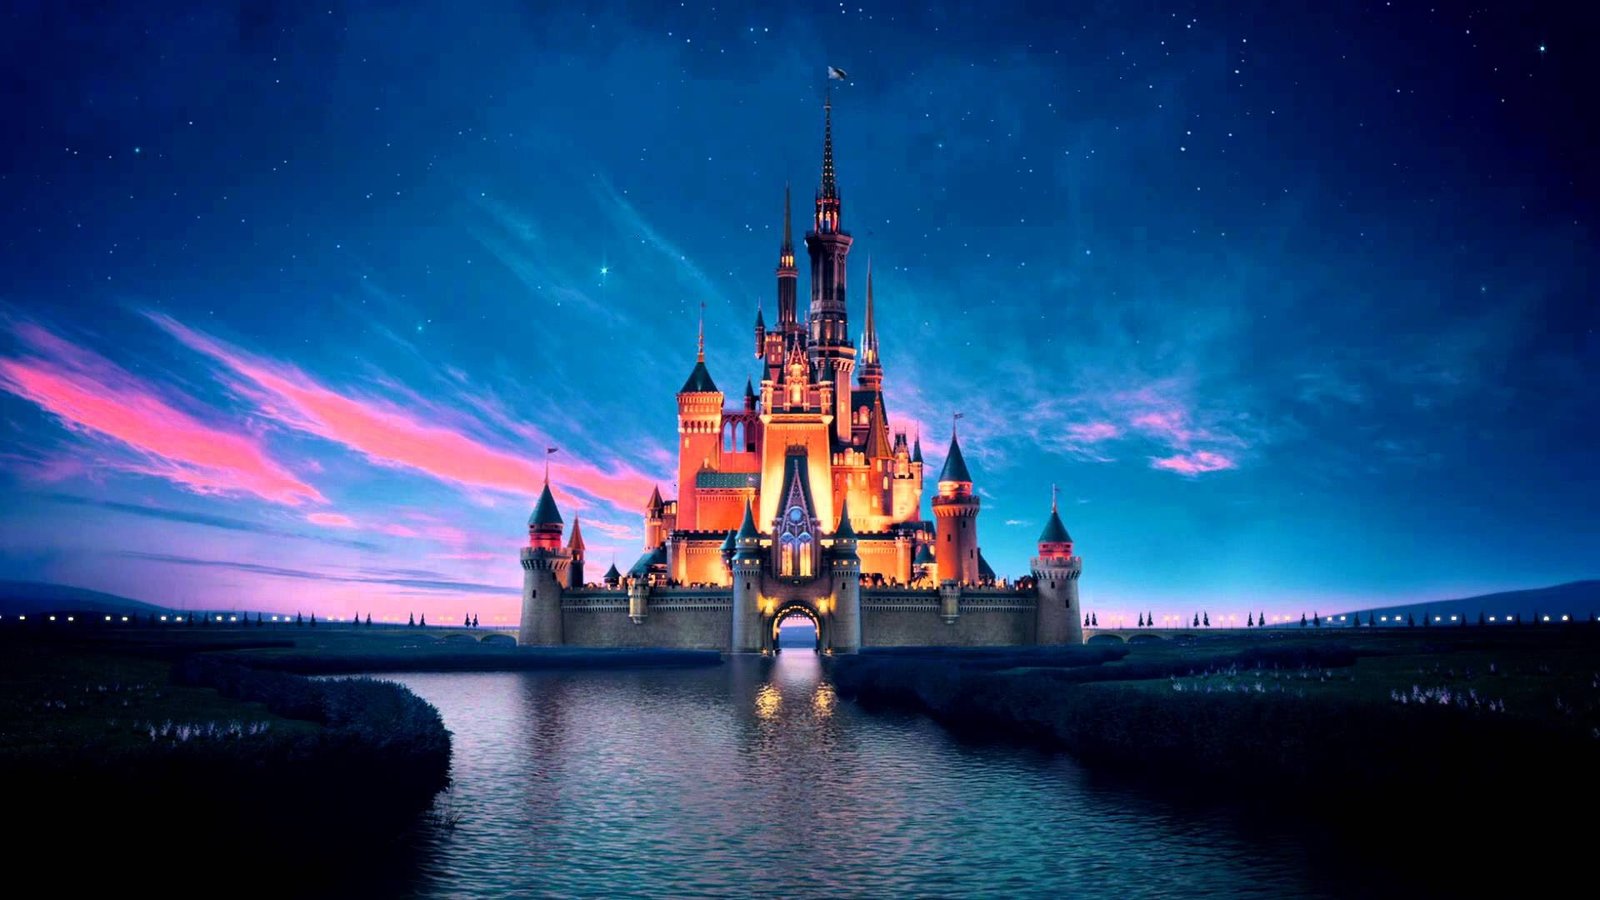 Os 40 Melhores Filmes Animados da Disney - La Parola